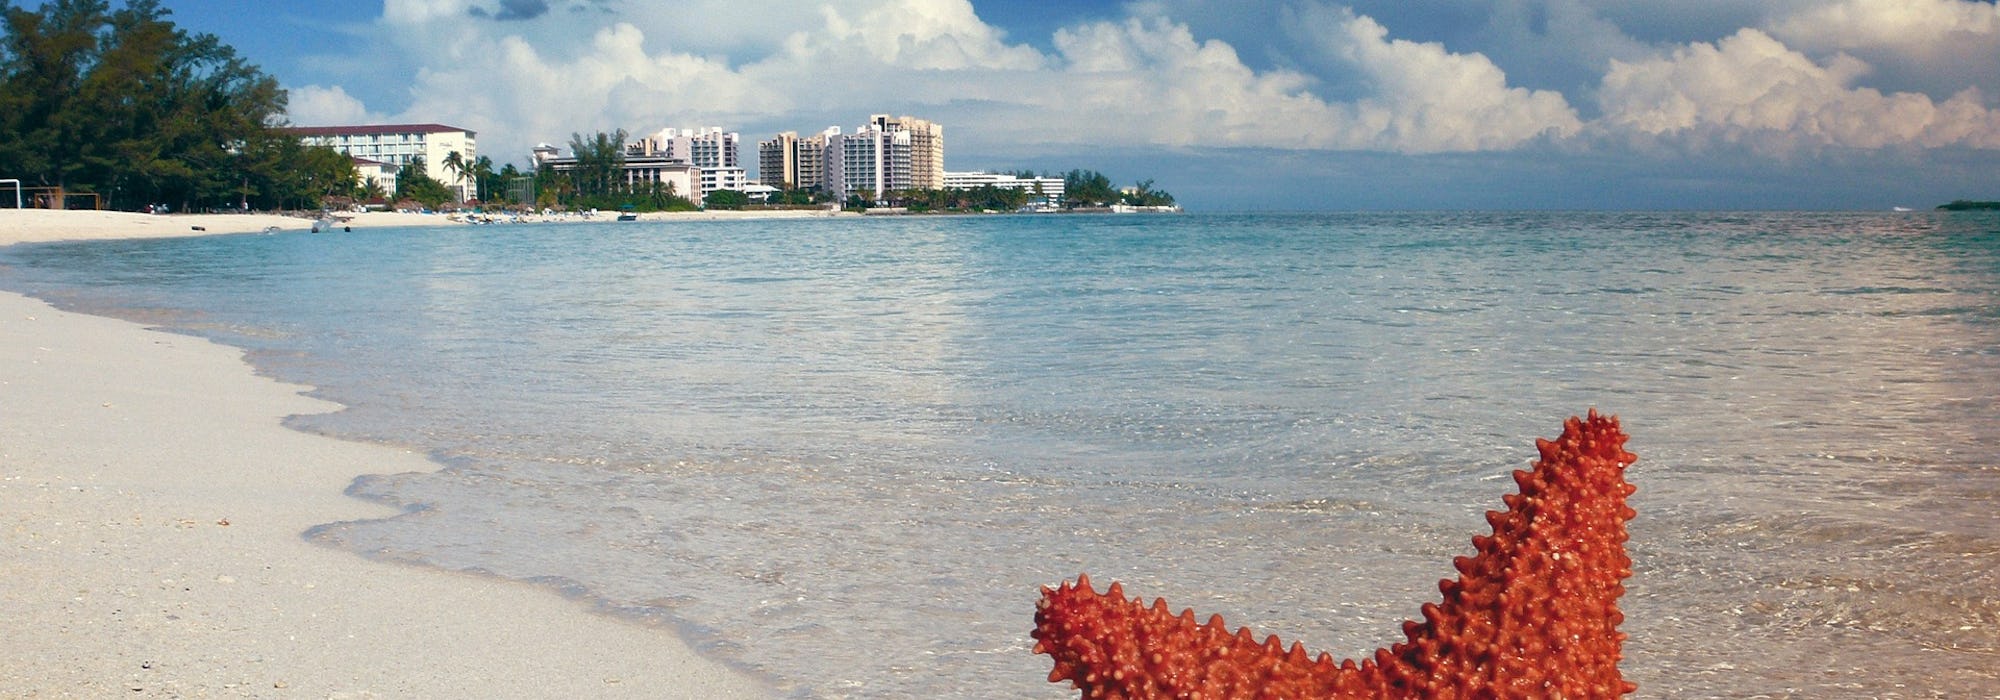 En sjöstjärna i stranden medan vågorna kommer in på stranden. I bakgrunden ses flera byggnader.